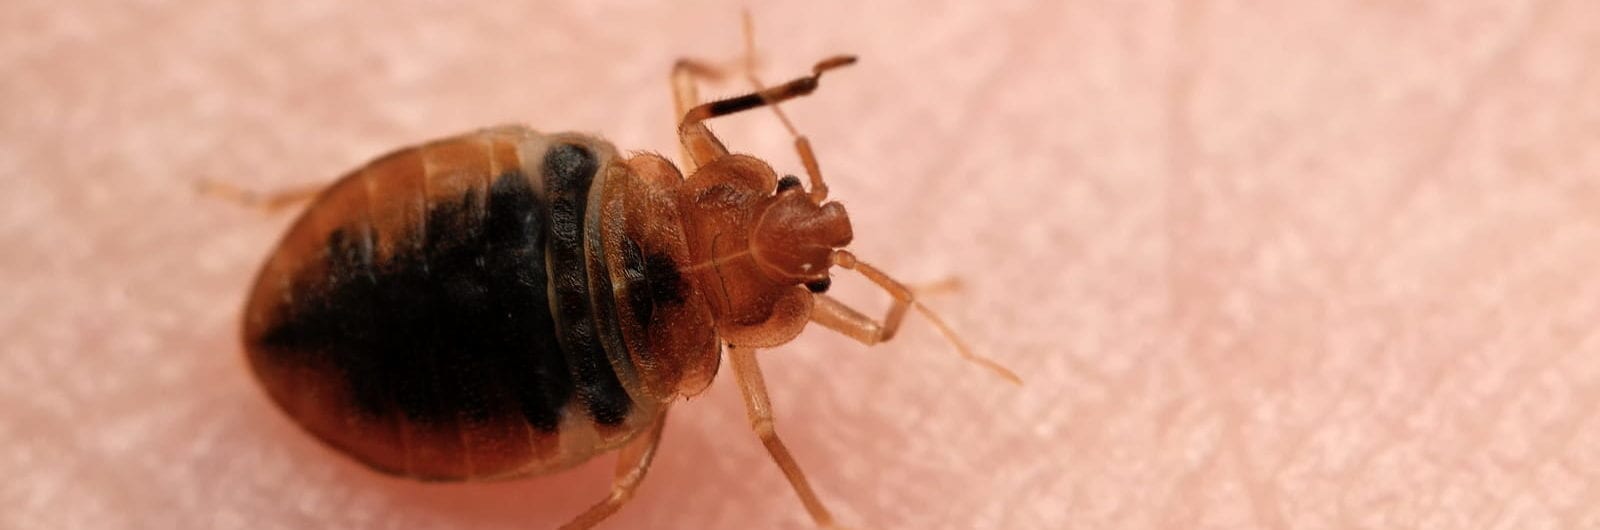 Bed bug on feeding on human skin